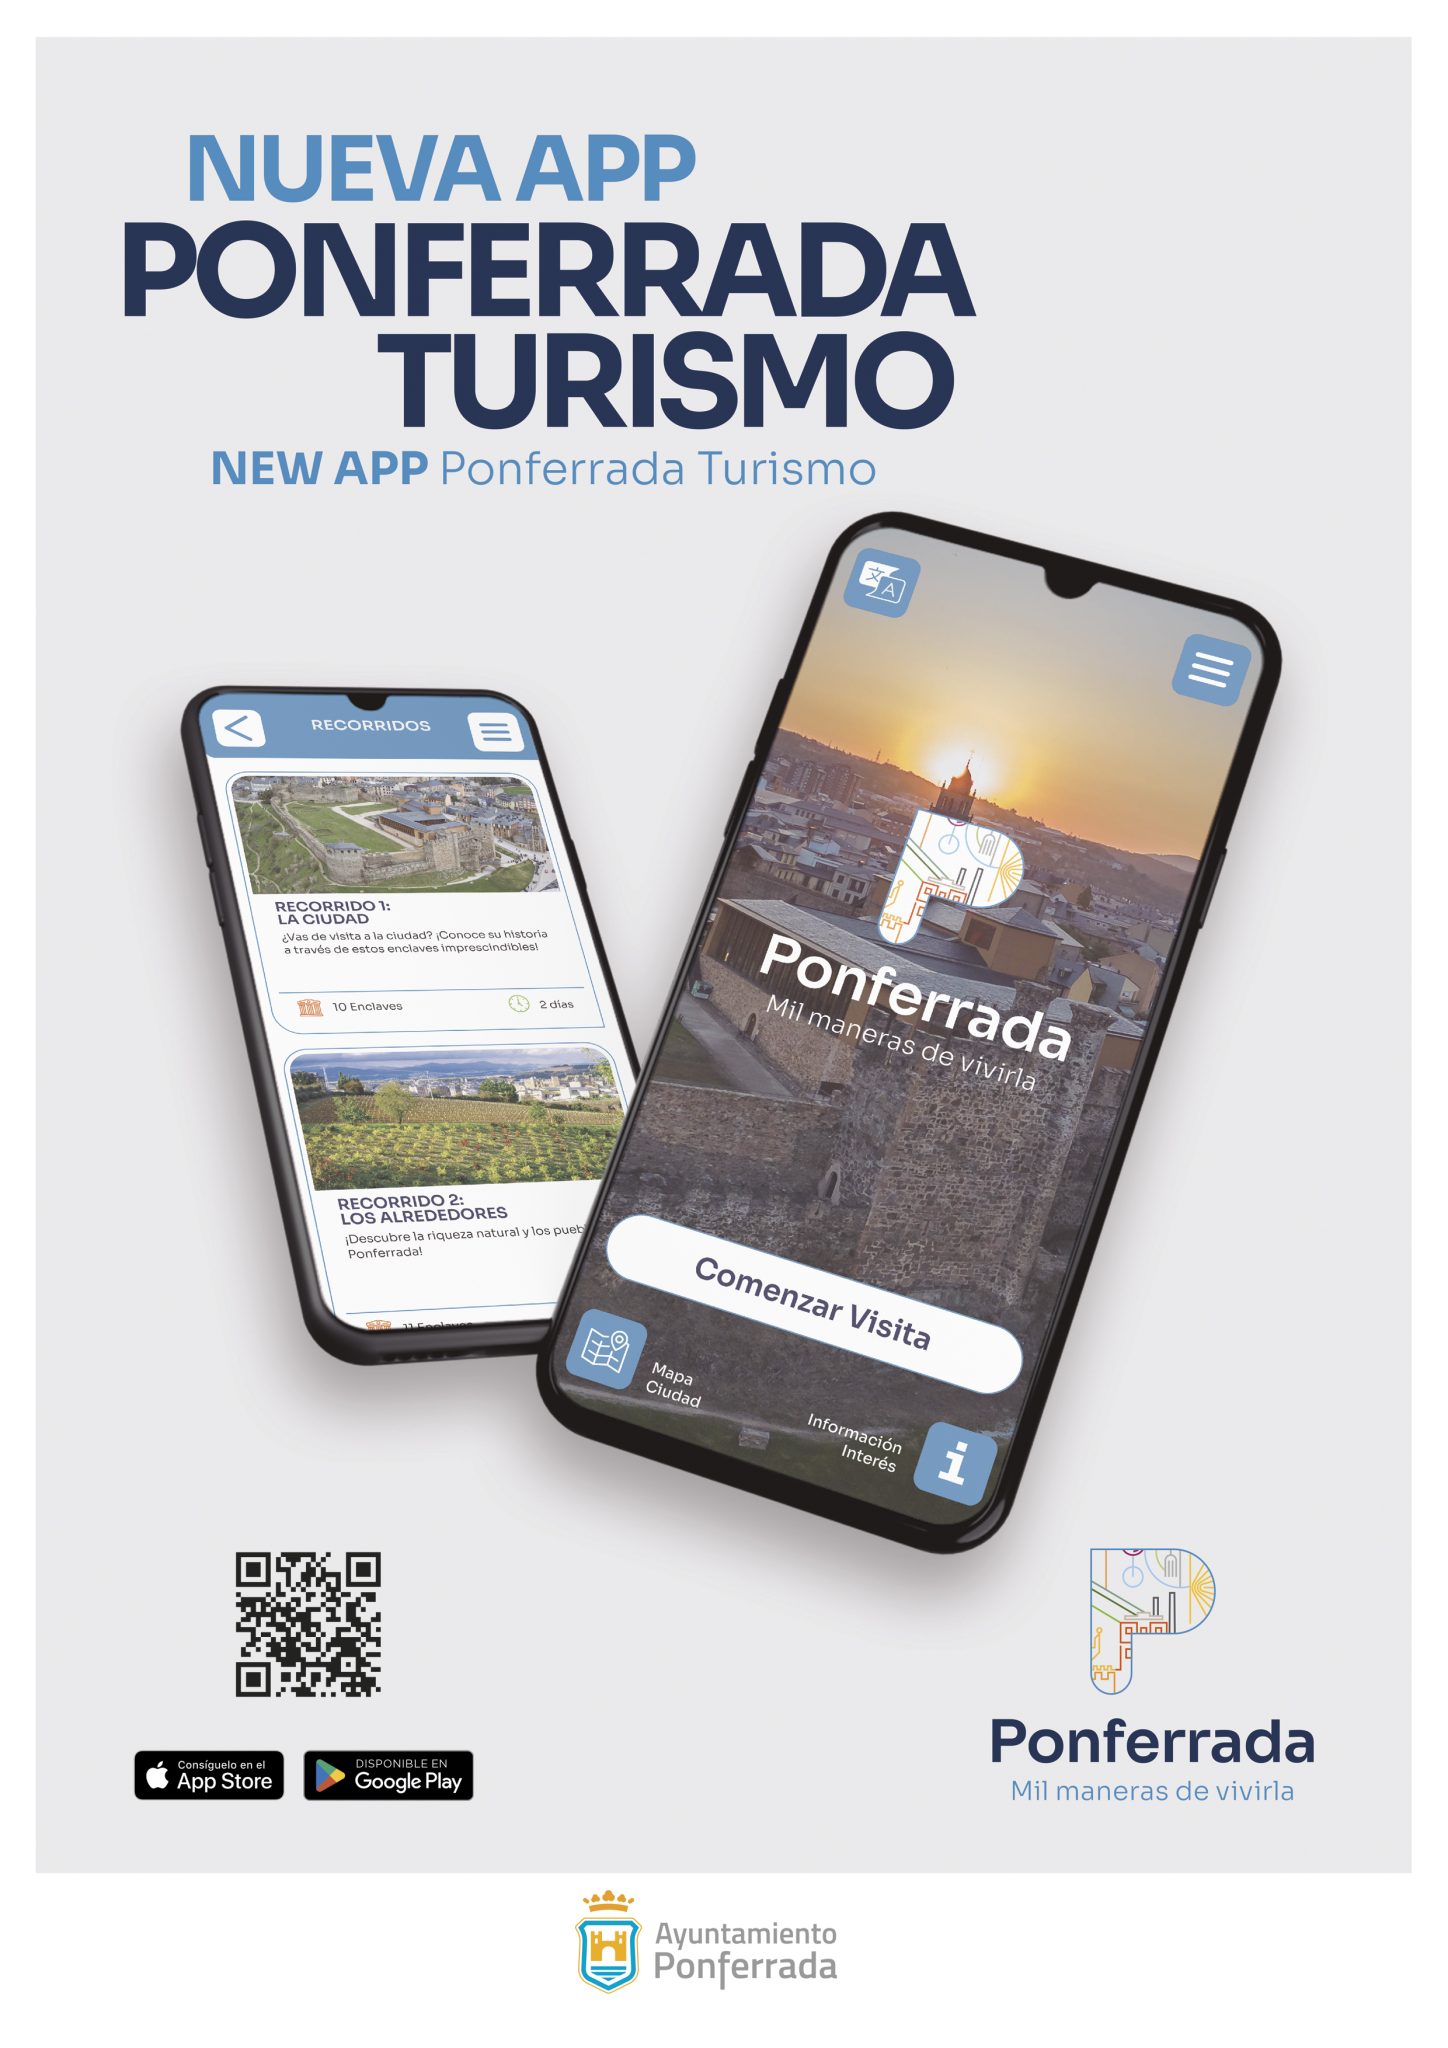 Ponferrada estrena su nueva App que añade Realidad Aumentada para conocer los recursos turísticos de la ciudad 2